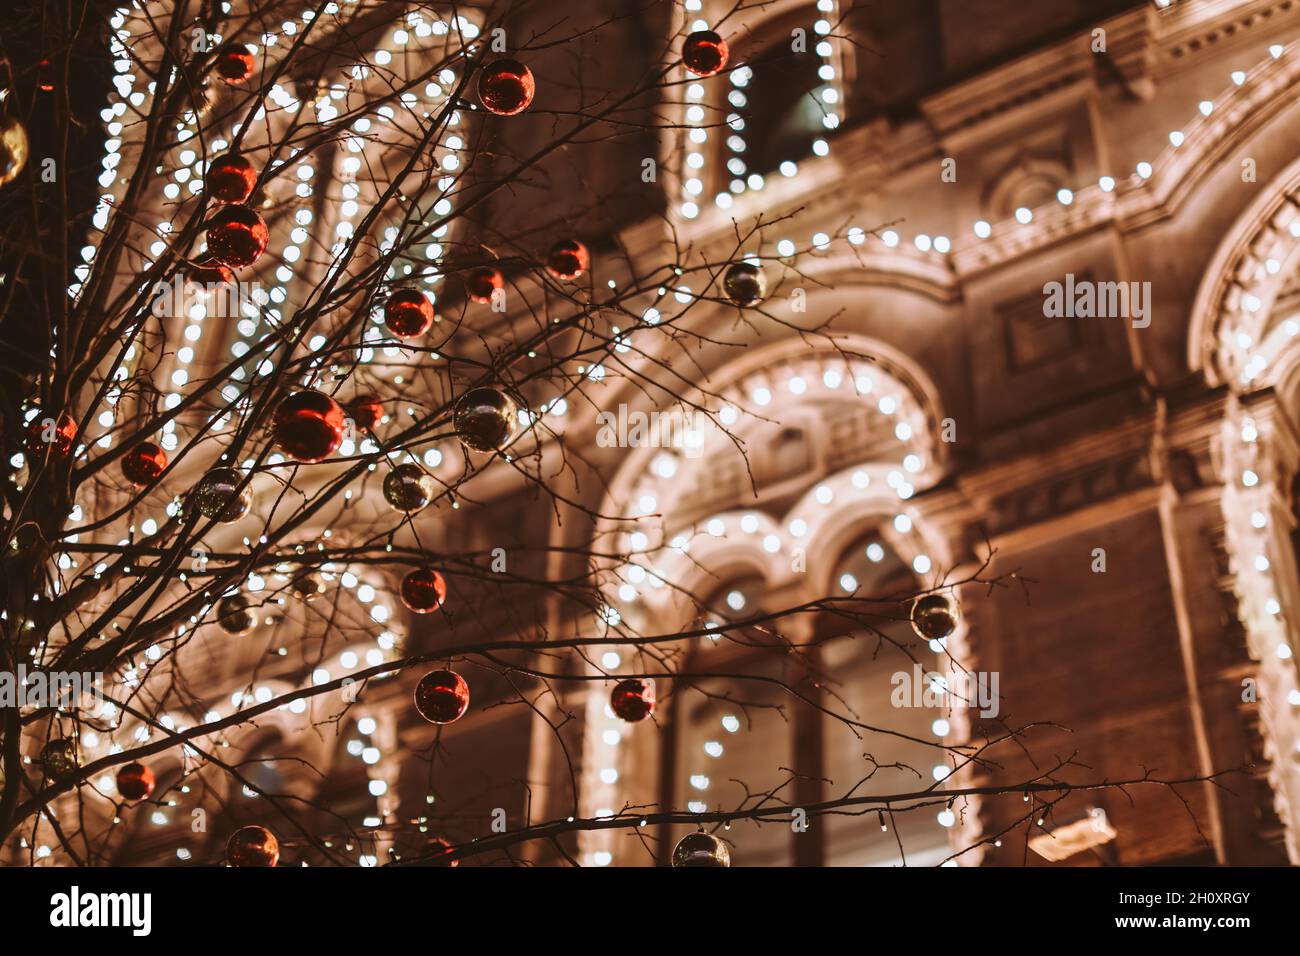 Weihnachten und Neujahr in Moskau. Nachtlicht scheint und leuchtet in der Nähe VON KAUGUMMI. Stadtstraße für Weihnachten dekoriert. Winterliches Stadtbild Stockfoto